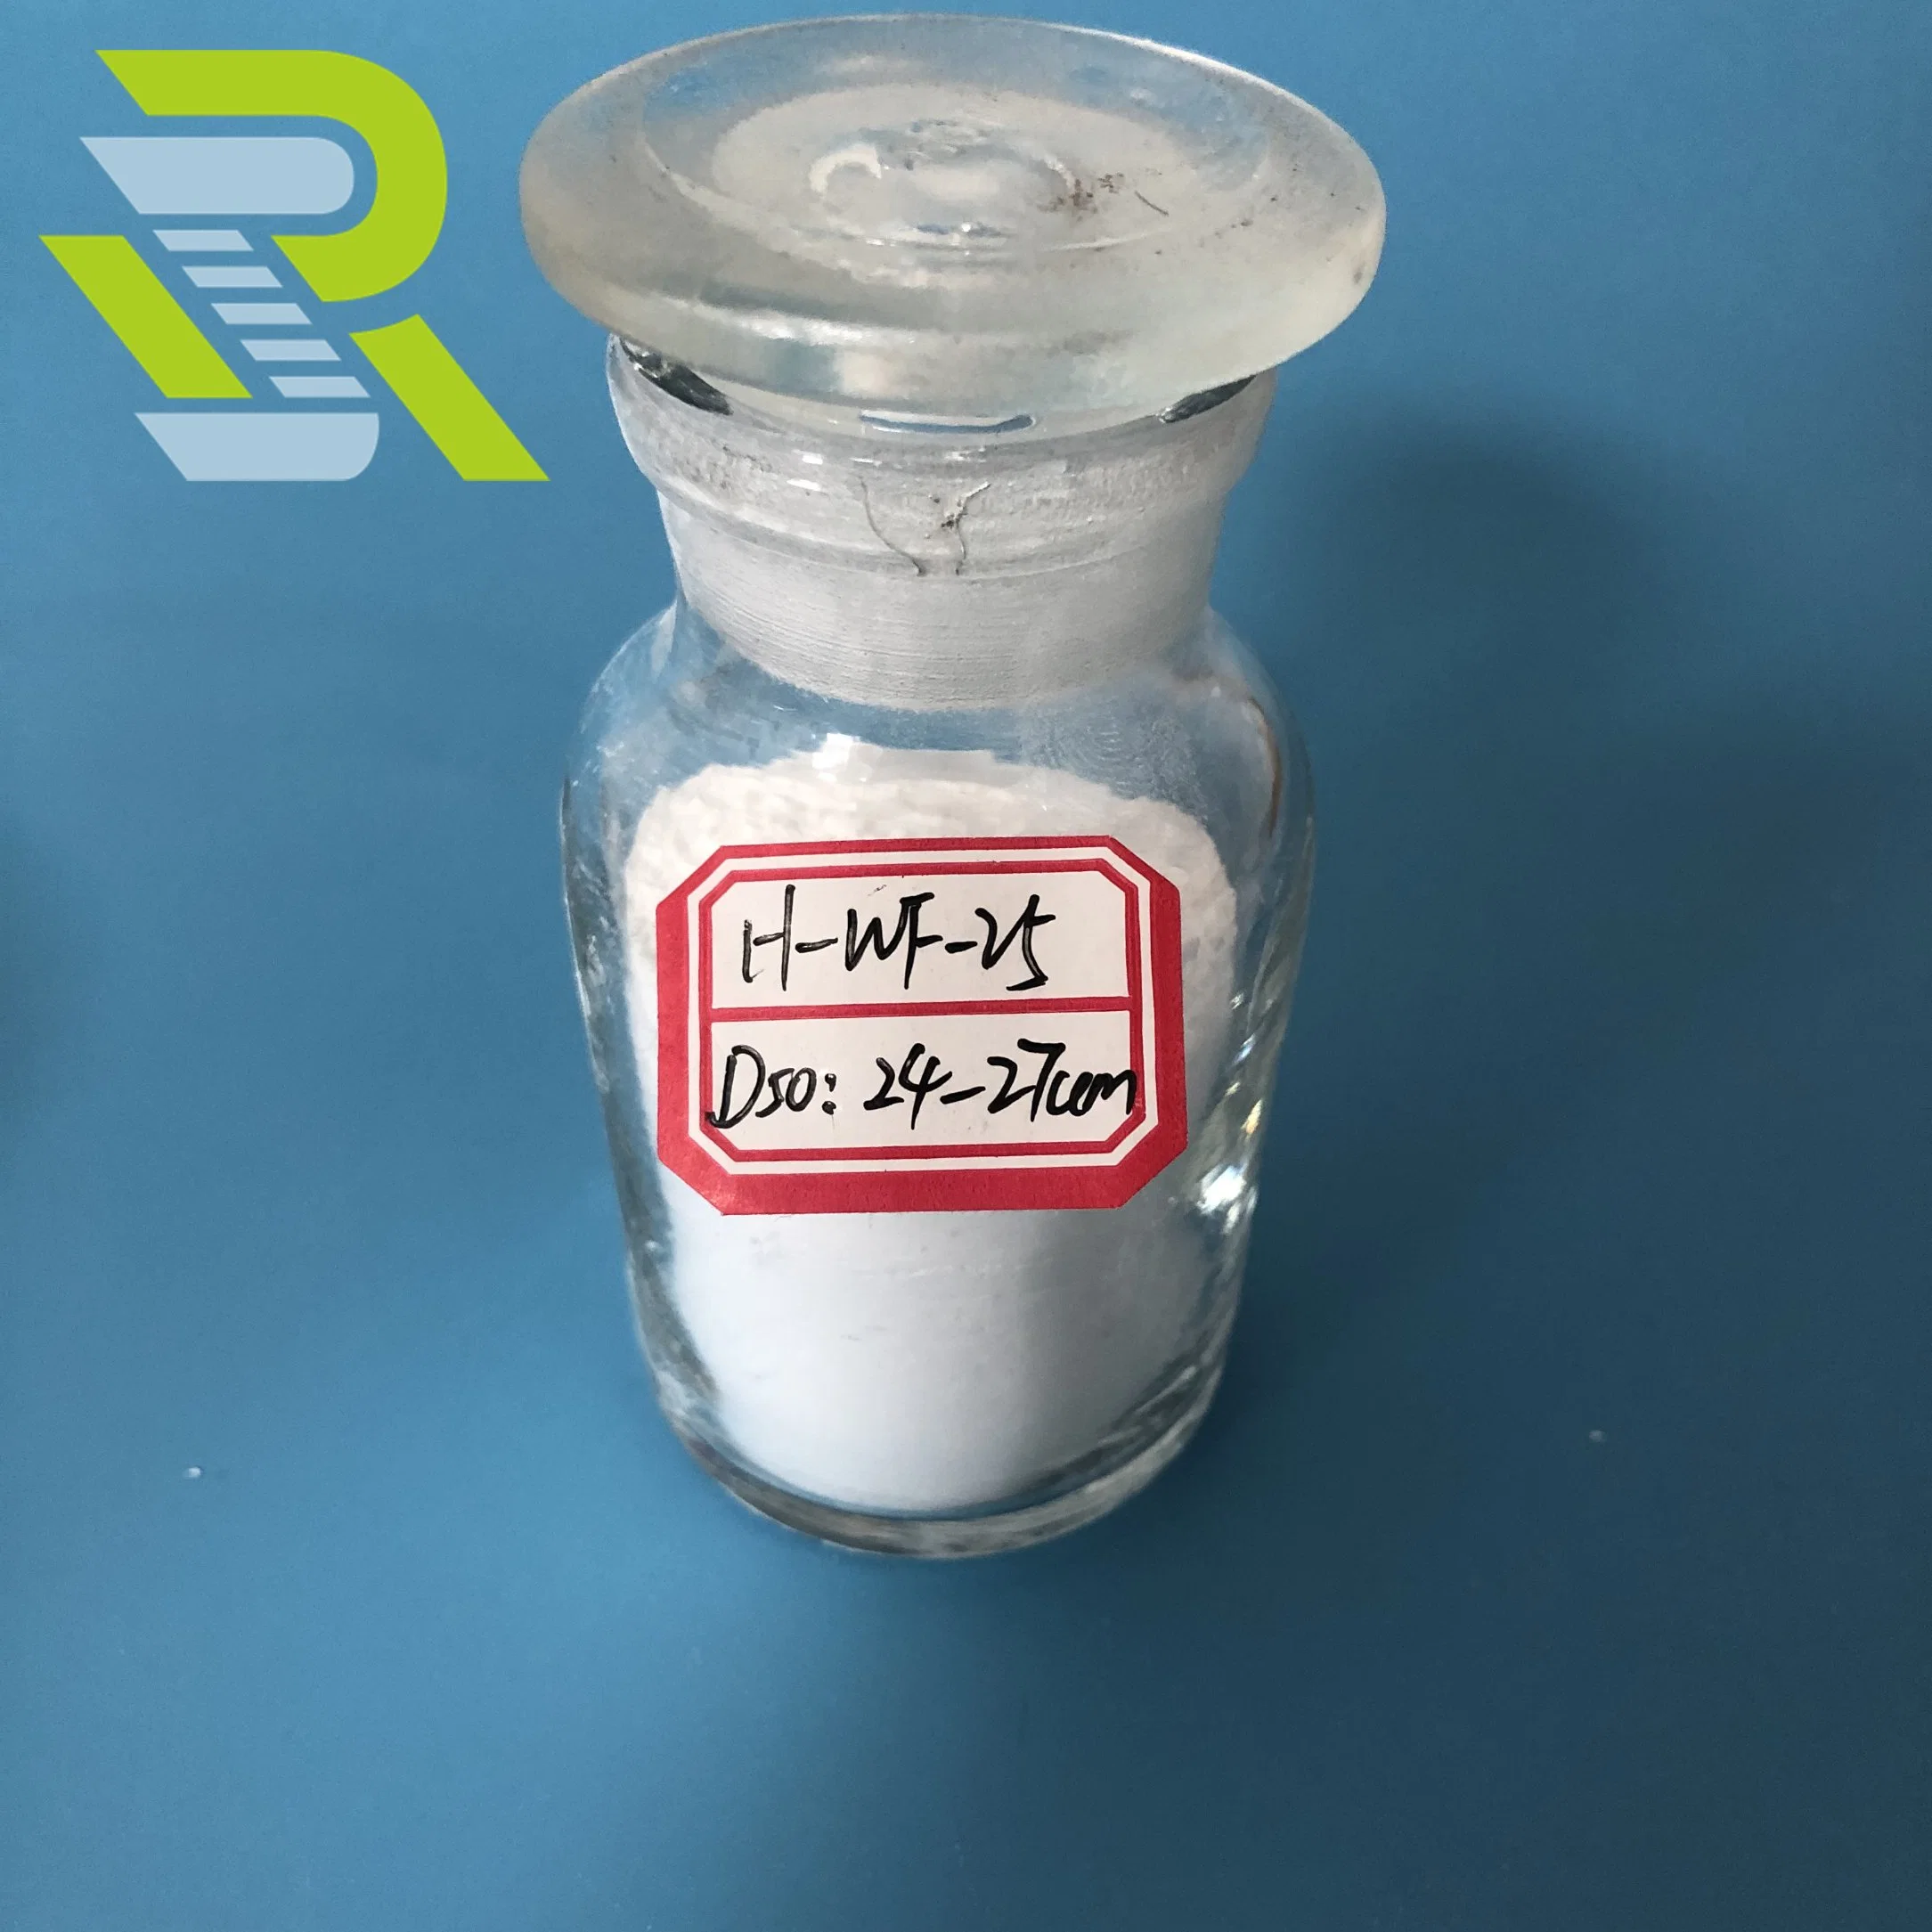 Chalco poudre blanc fin Prix de l'hydroxyde d'aluminium pour solide Surface du plan d'examen utiliser un mastic de résine